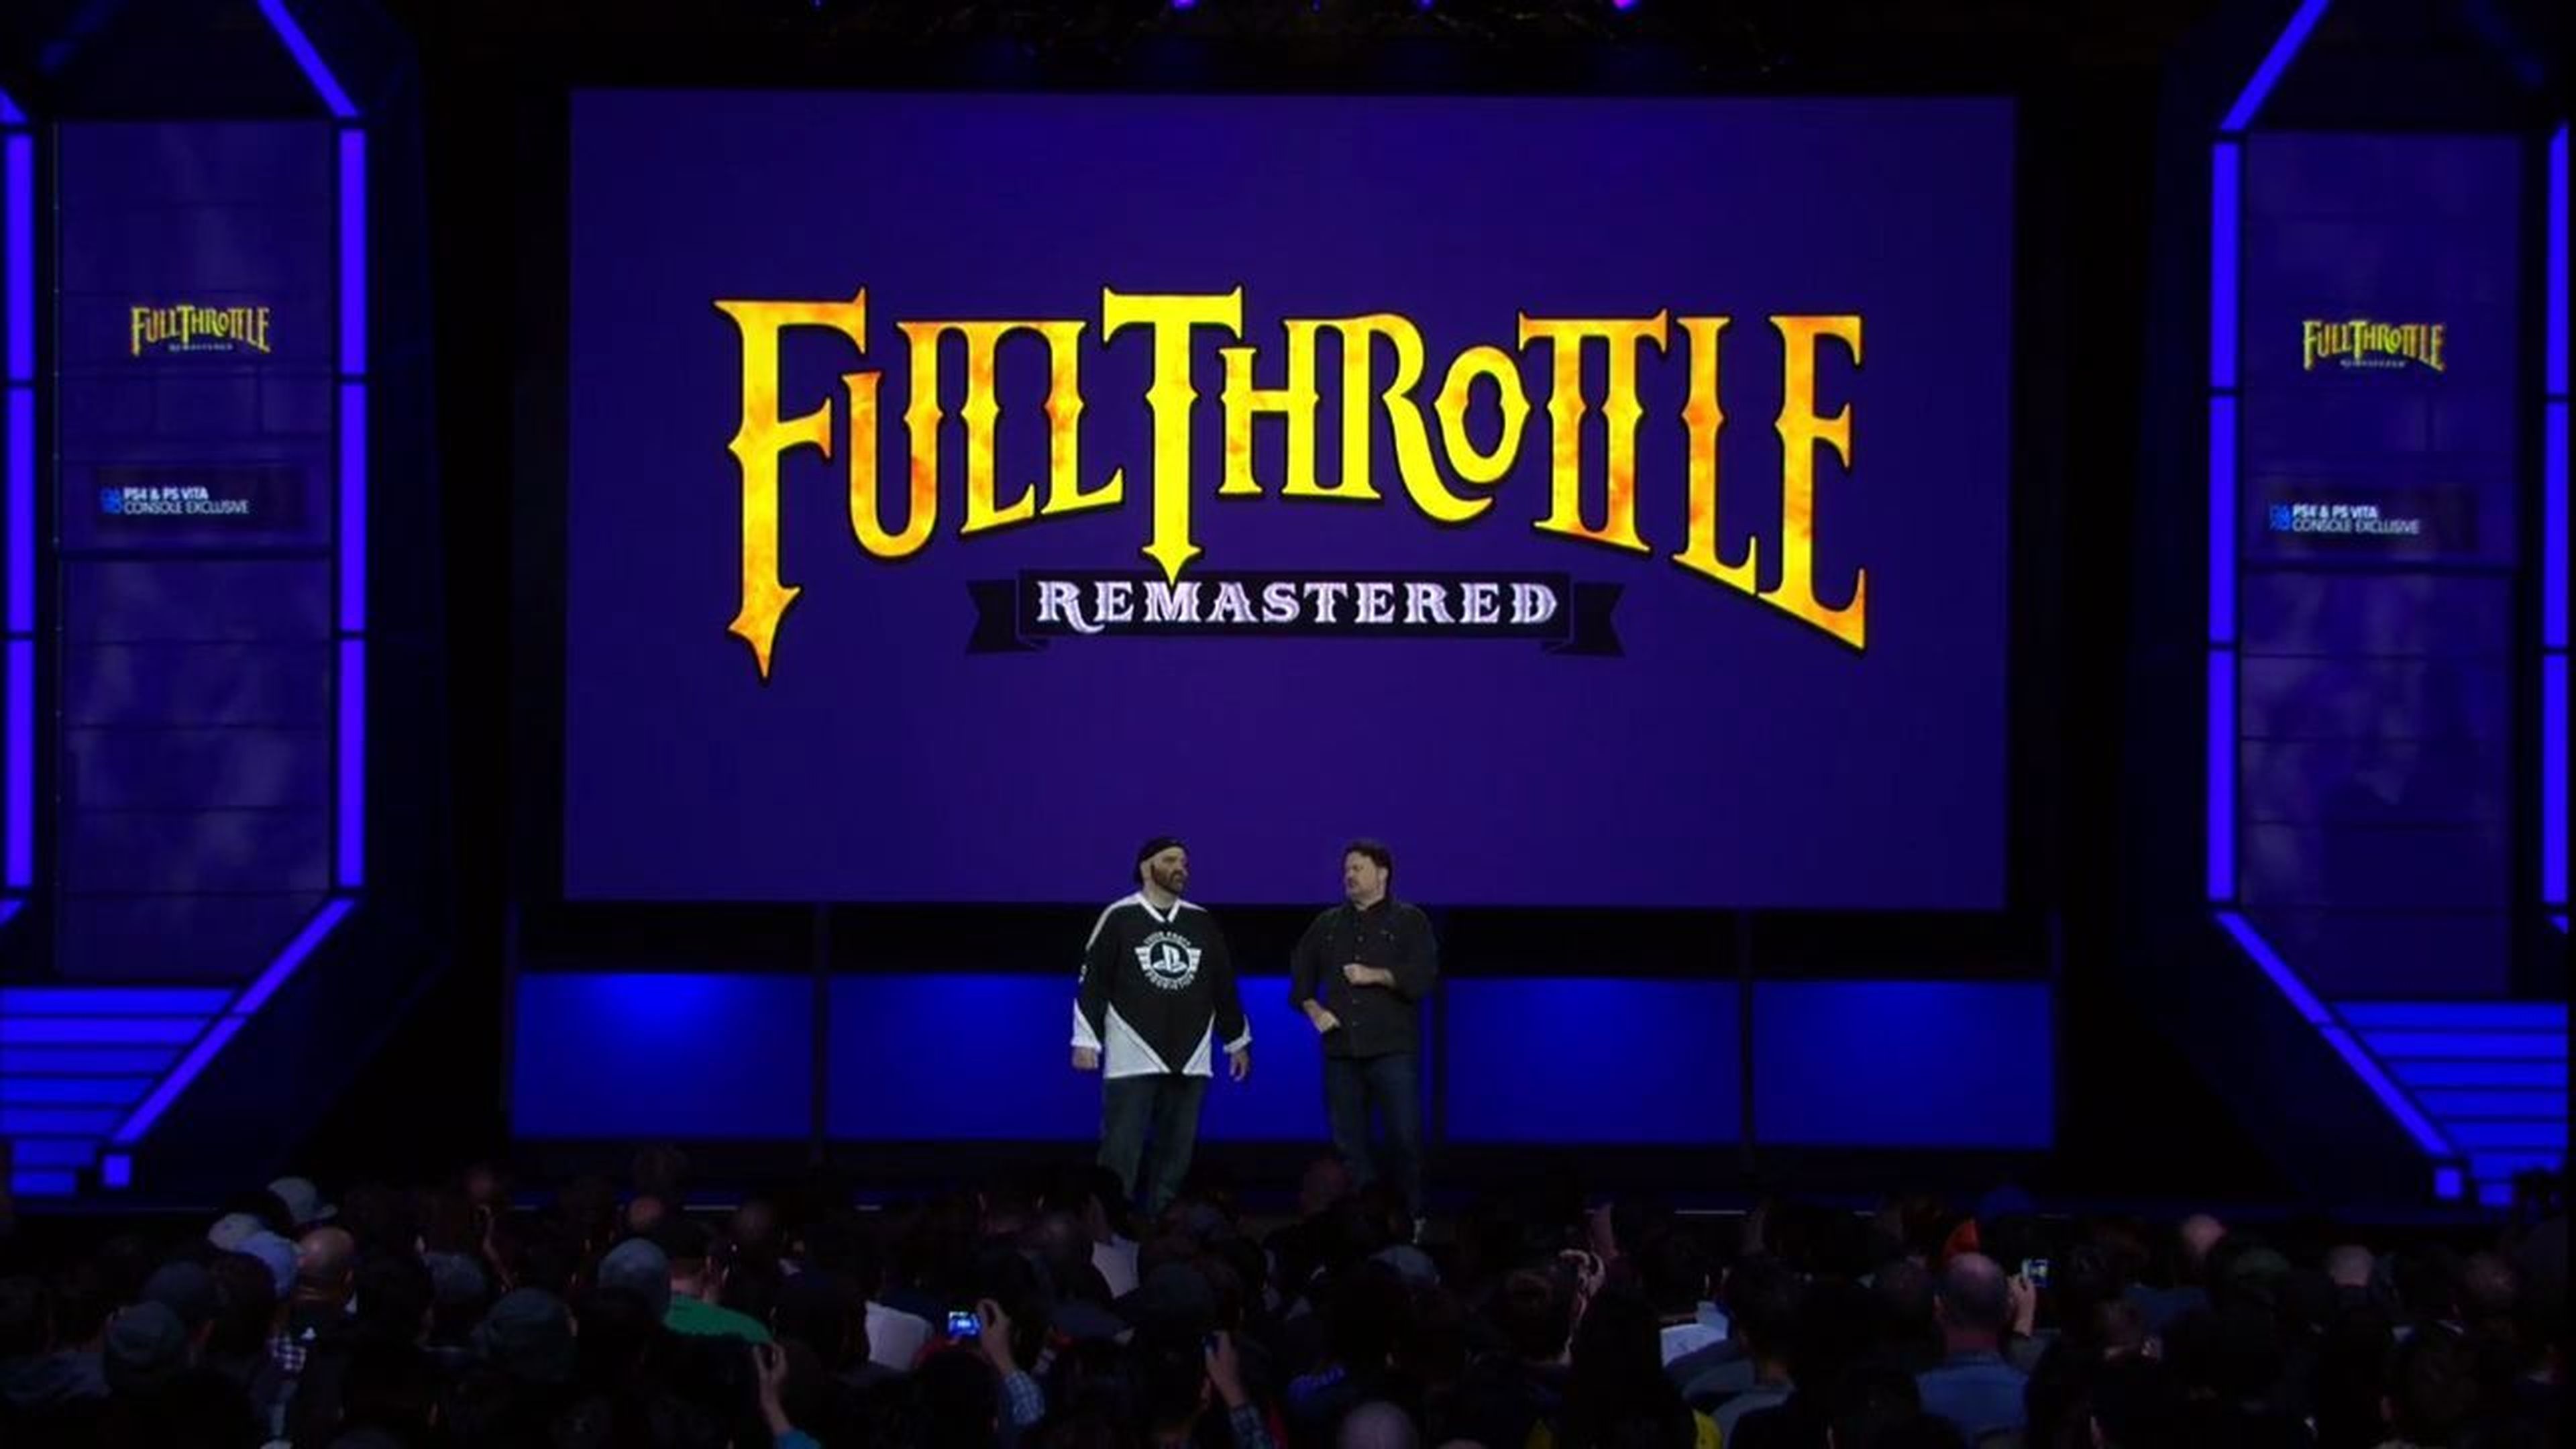 Full Throttle tendrá remasterización para PS4 y PS Vita